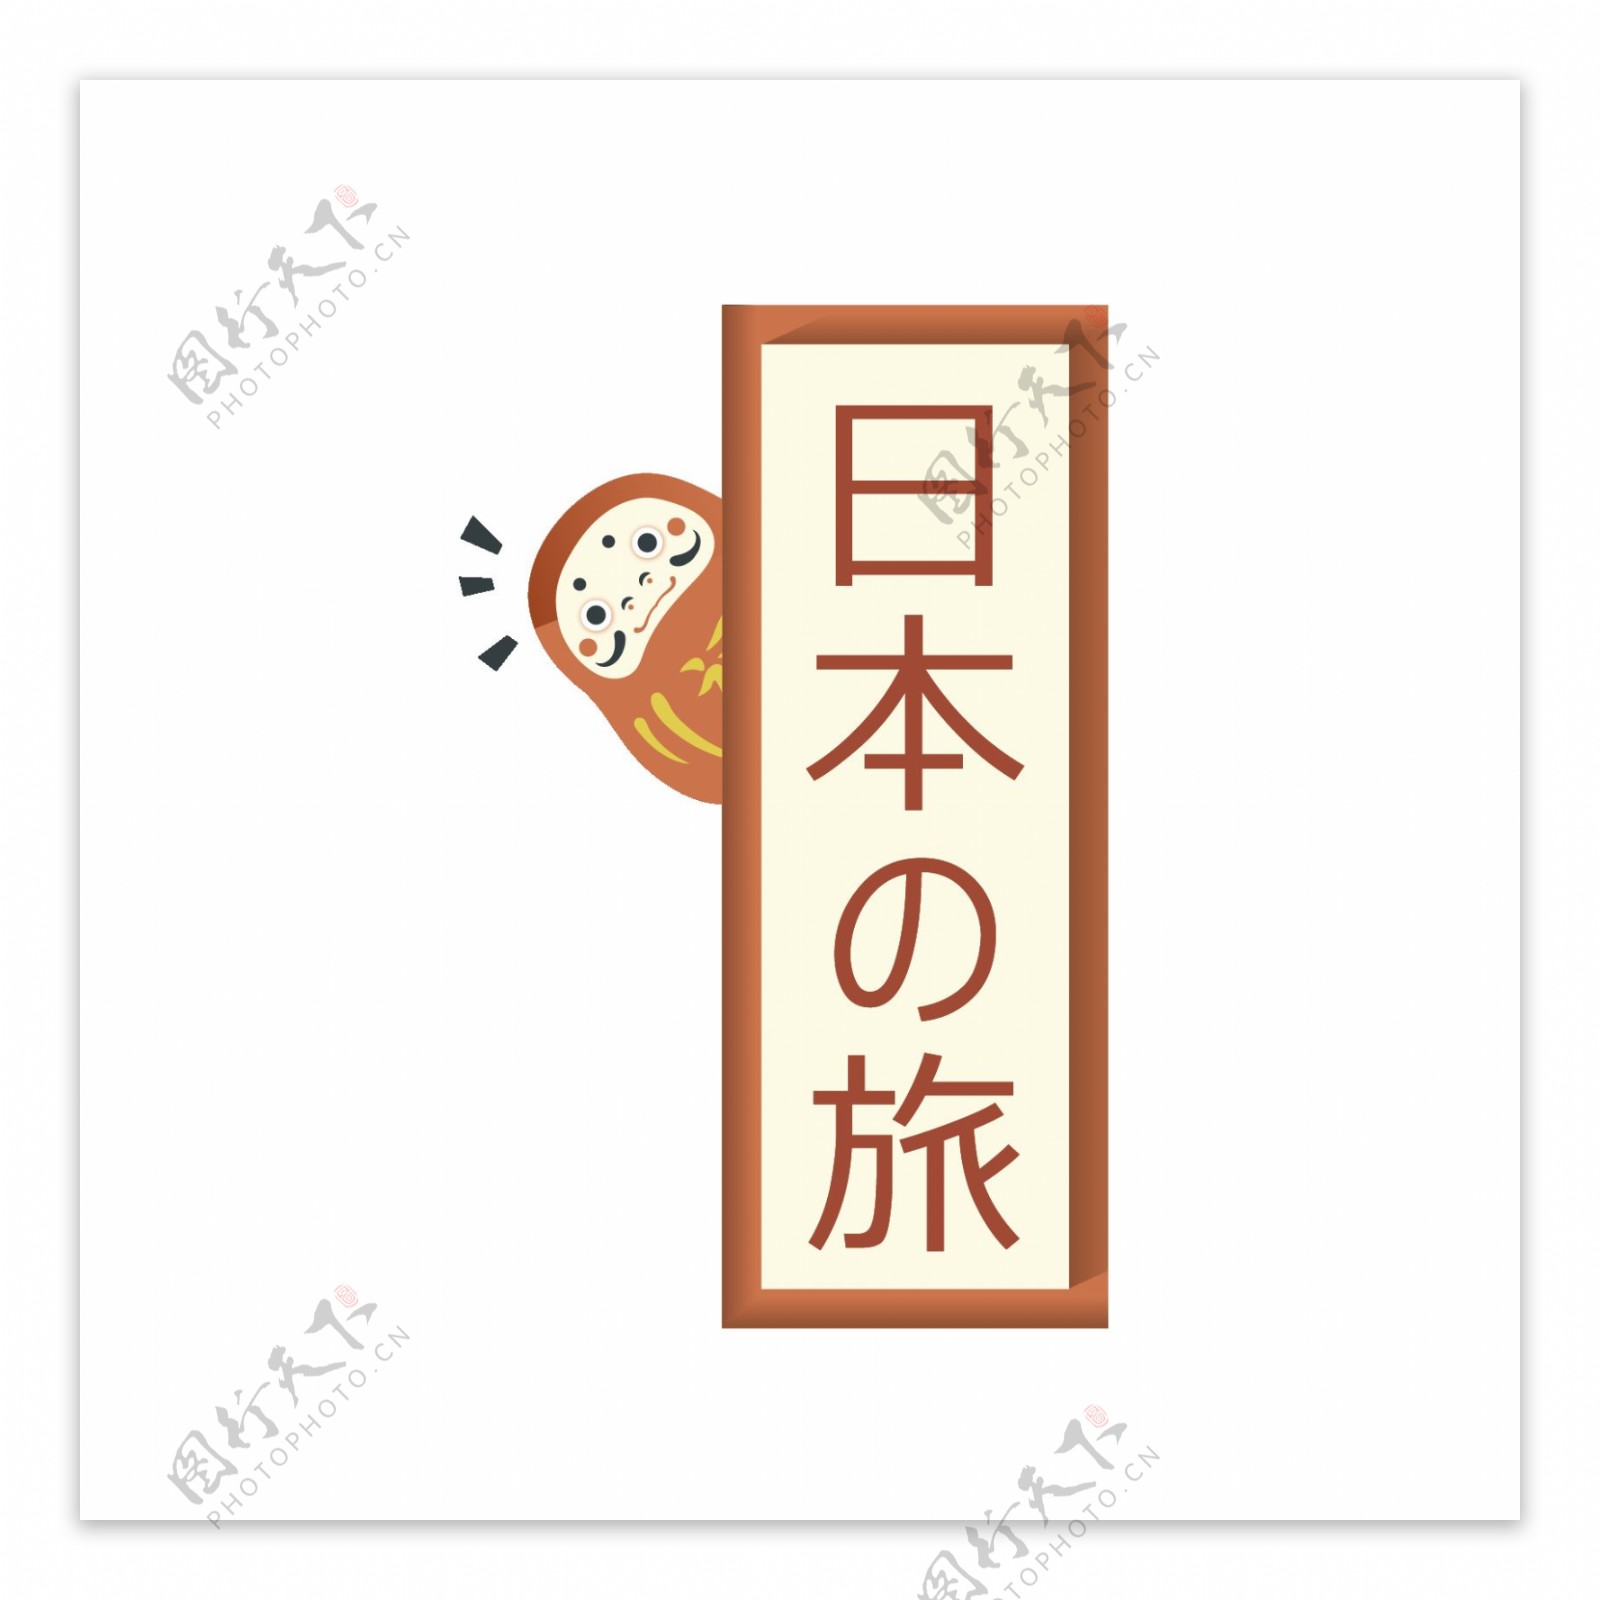 清新简约土黄色字体日本旅游装饰元素